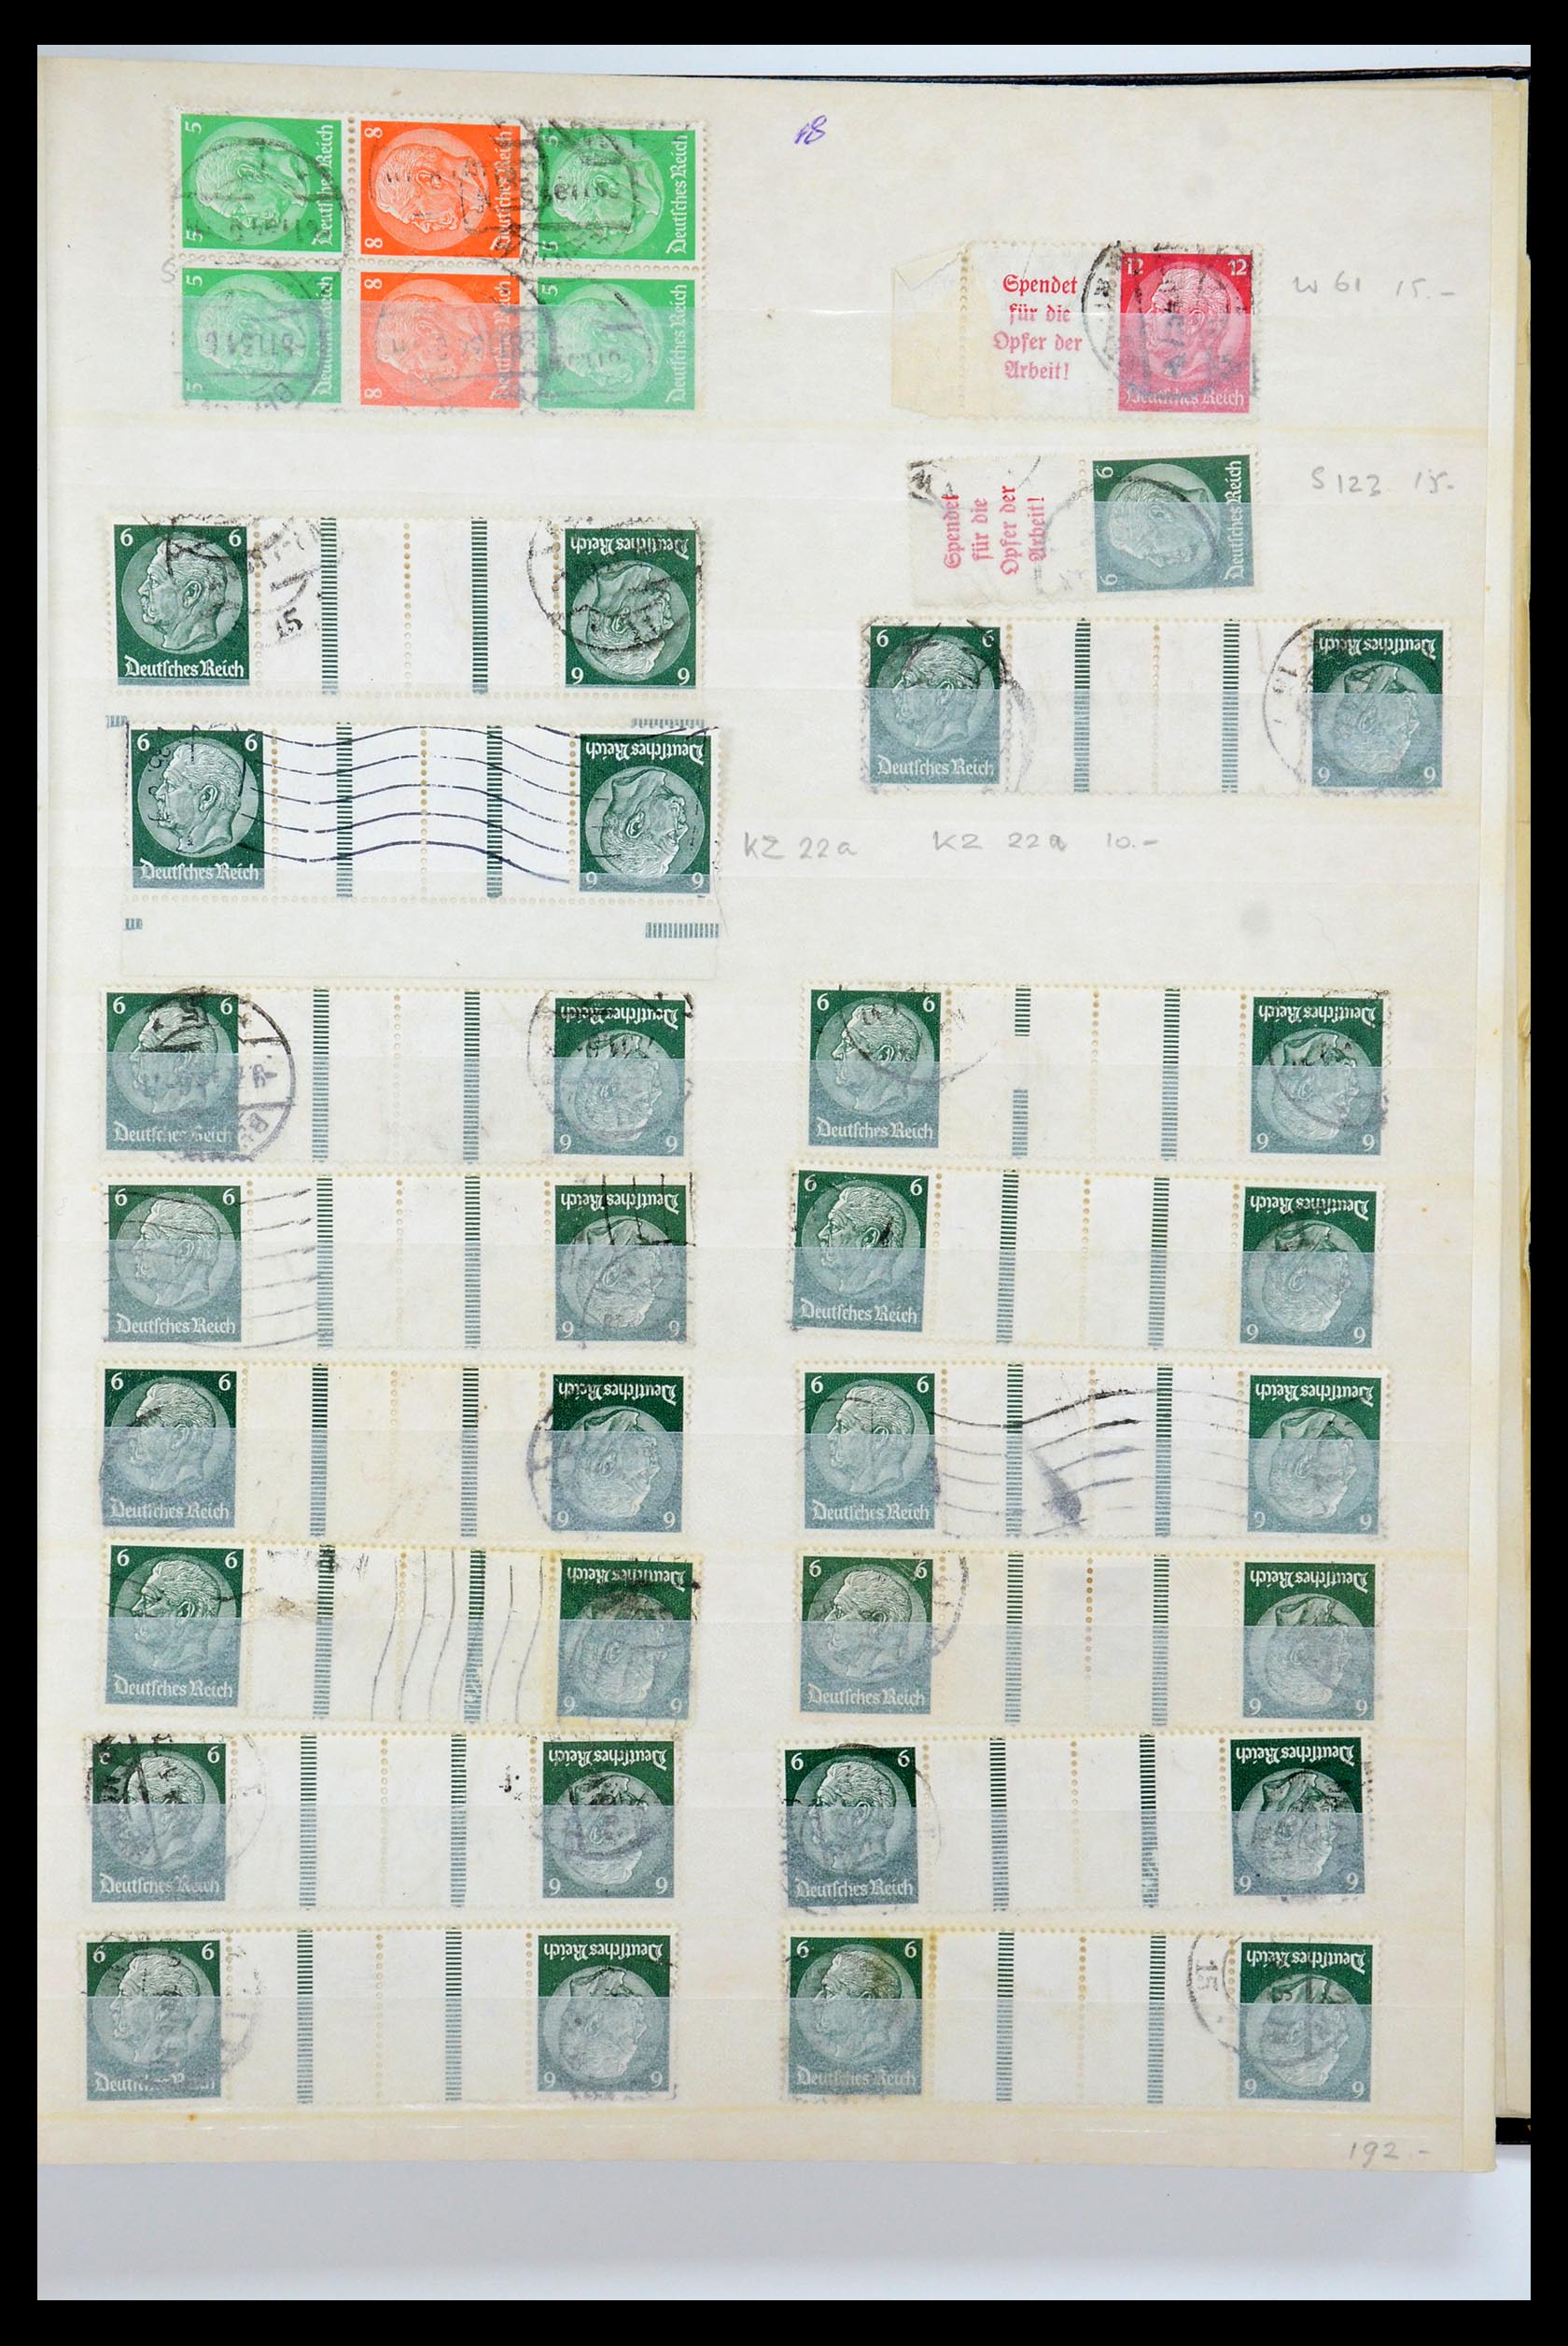 35729 032 - Postzegelverzameling 35729 Duitsland combinaties 1920-1980.